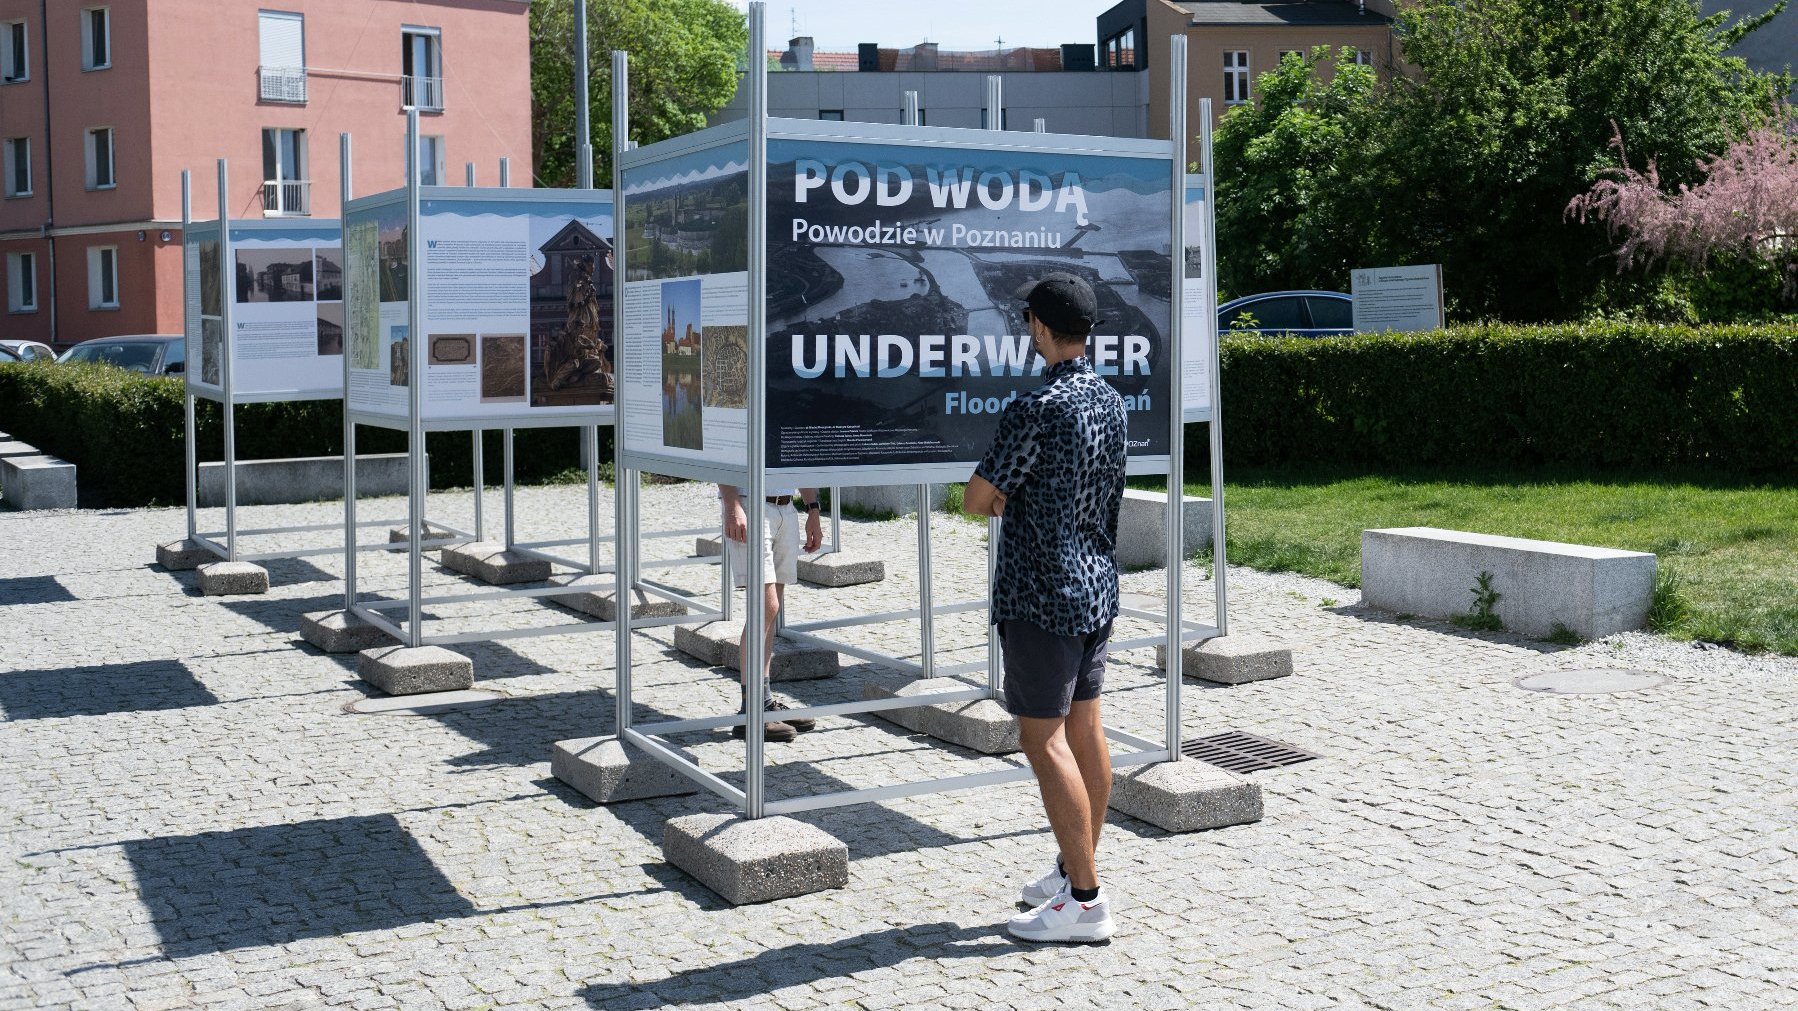 Galeria zdjęć przedstawia ludzi oglądających wystawę "Pod wodą. Powodzie w Poznaniu".